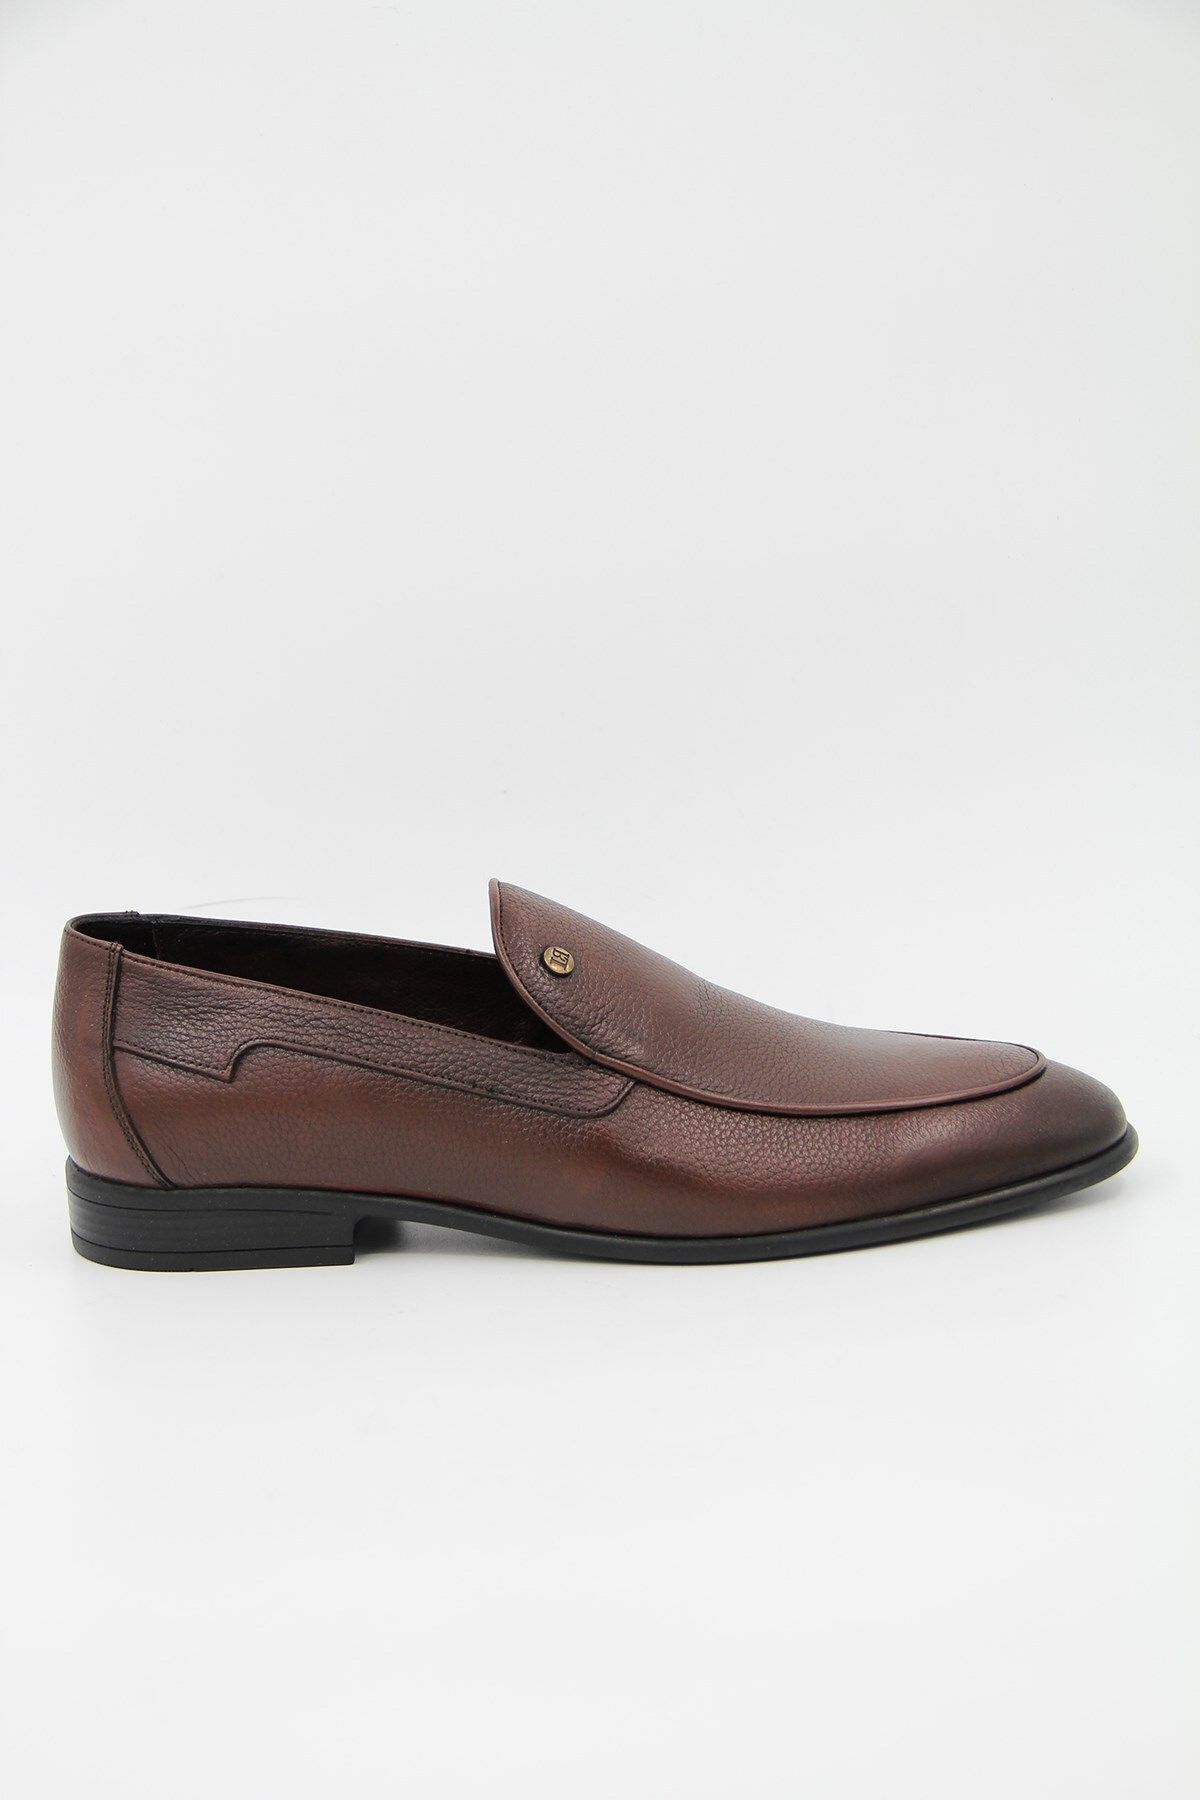 LUCIANO BELLINI 203-11 Erkek Klasik Ayakkabı - Kahverengi